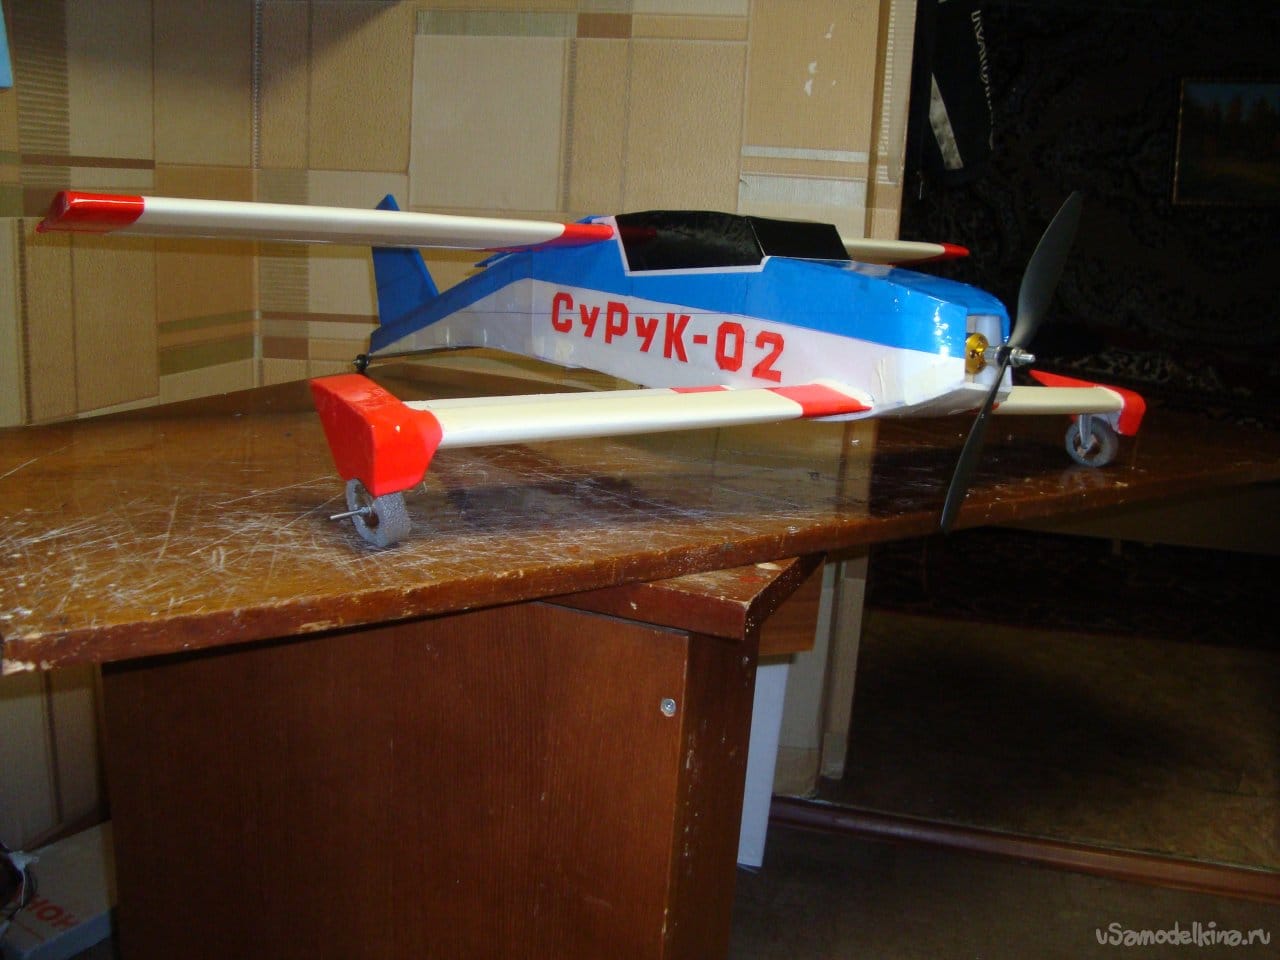 Создание экспериментальной авиамодели «Вьюн» СуРуК - 02